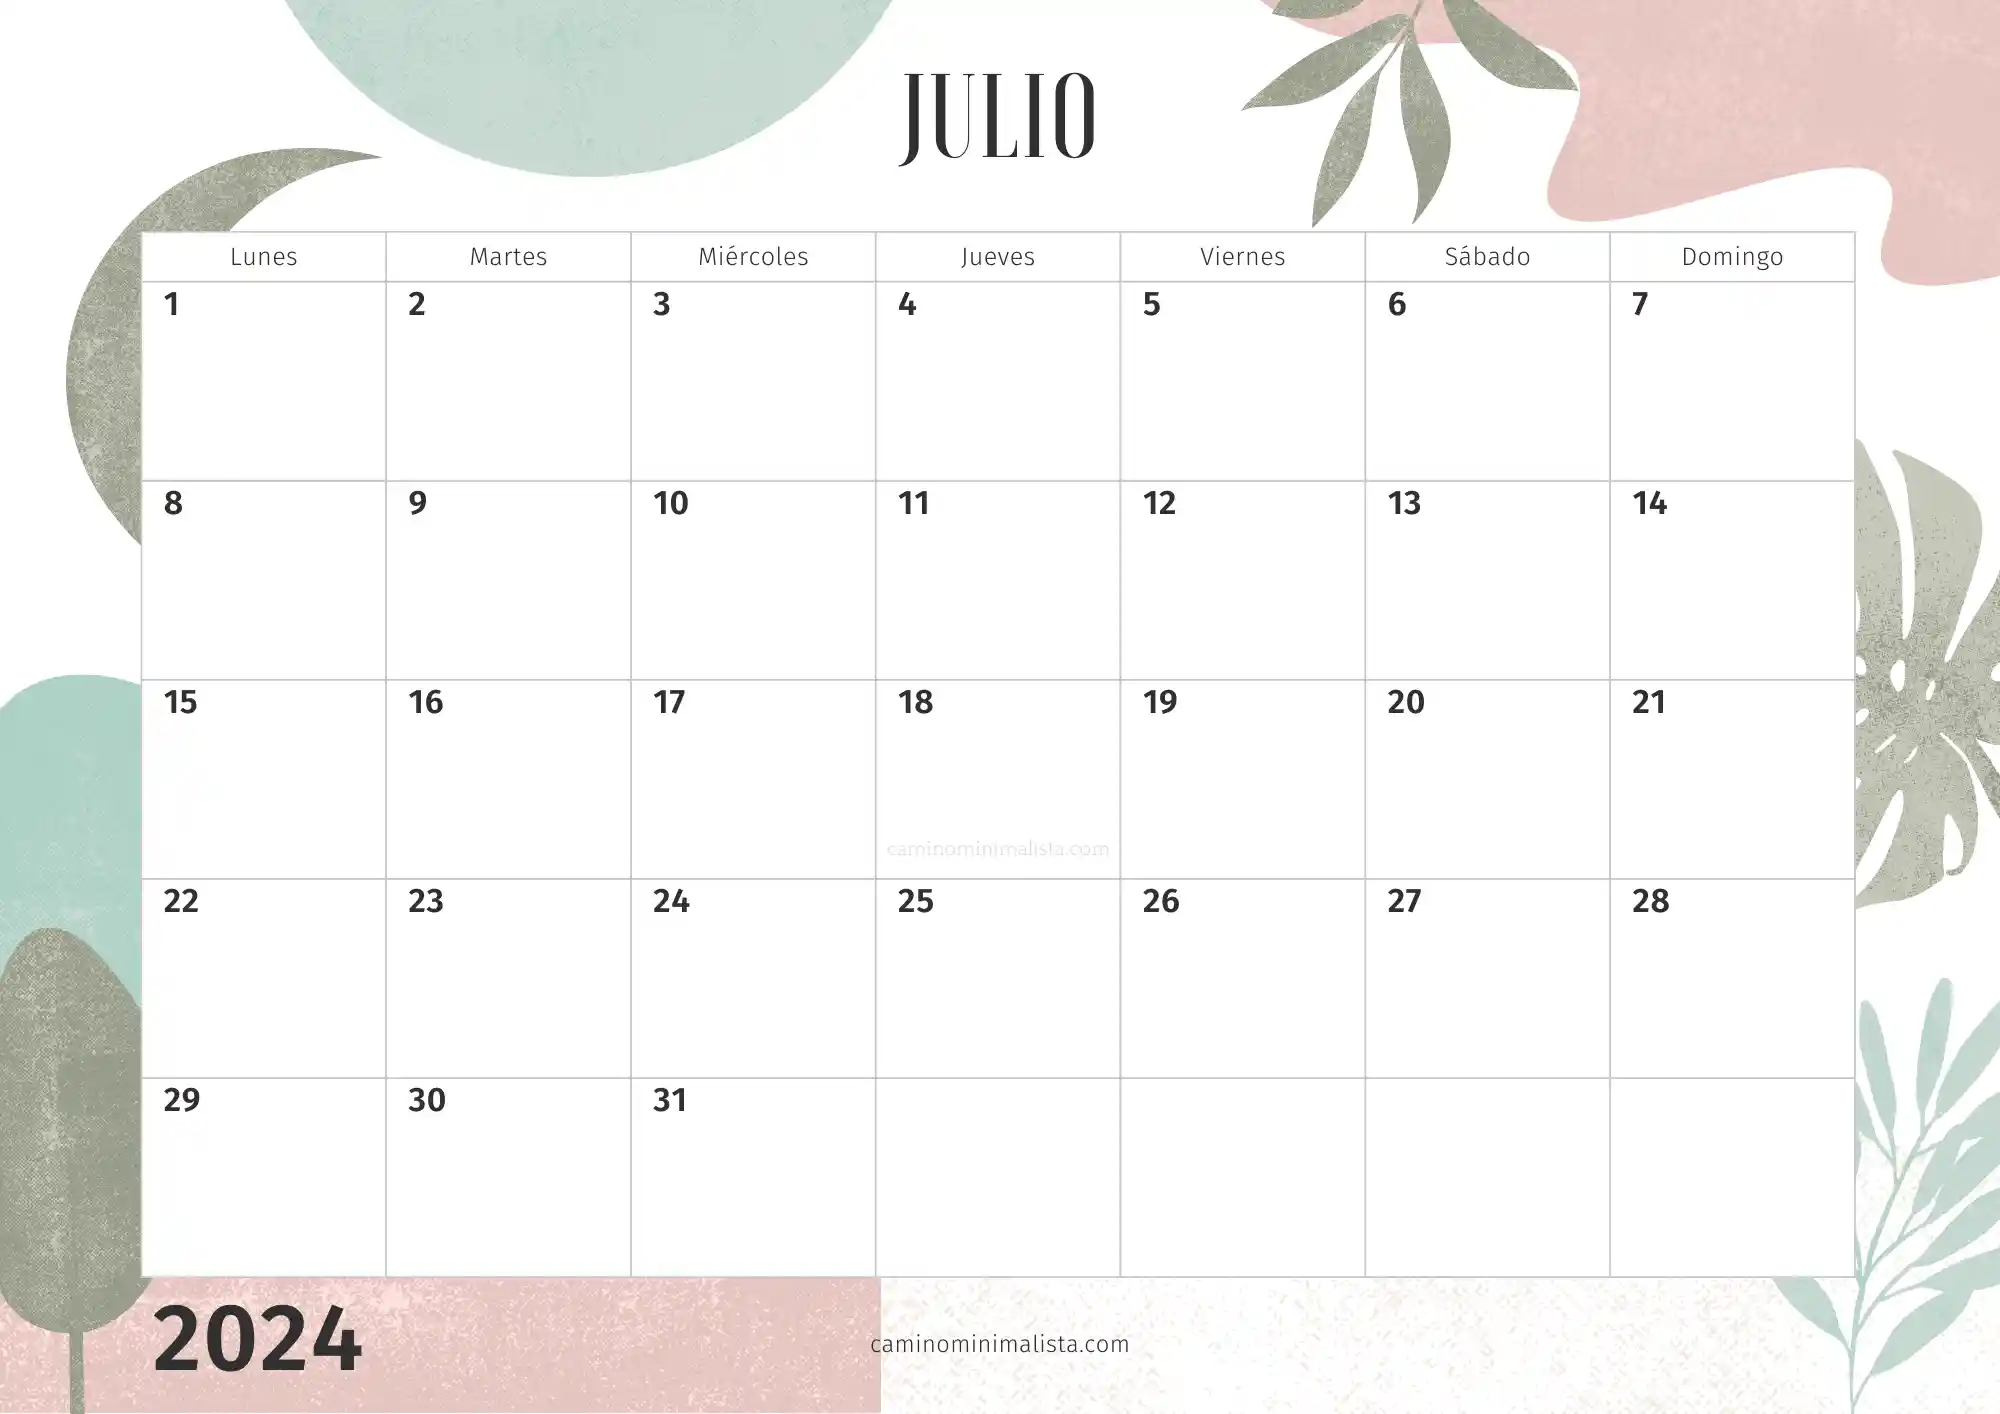 Calendario Julio 2024 decorado bonito